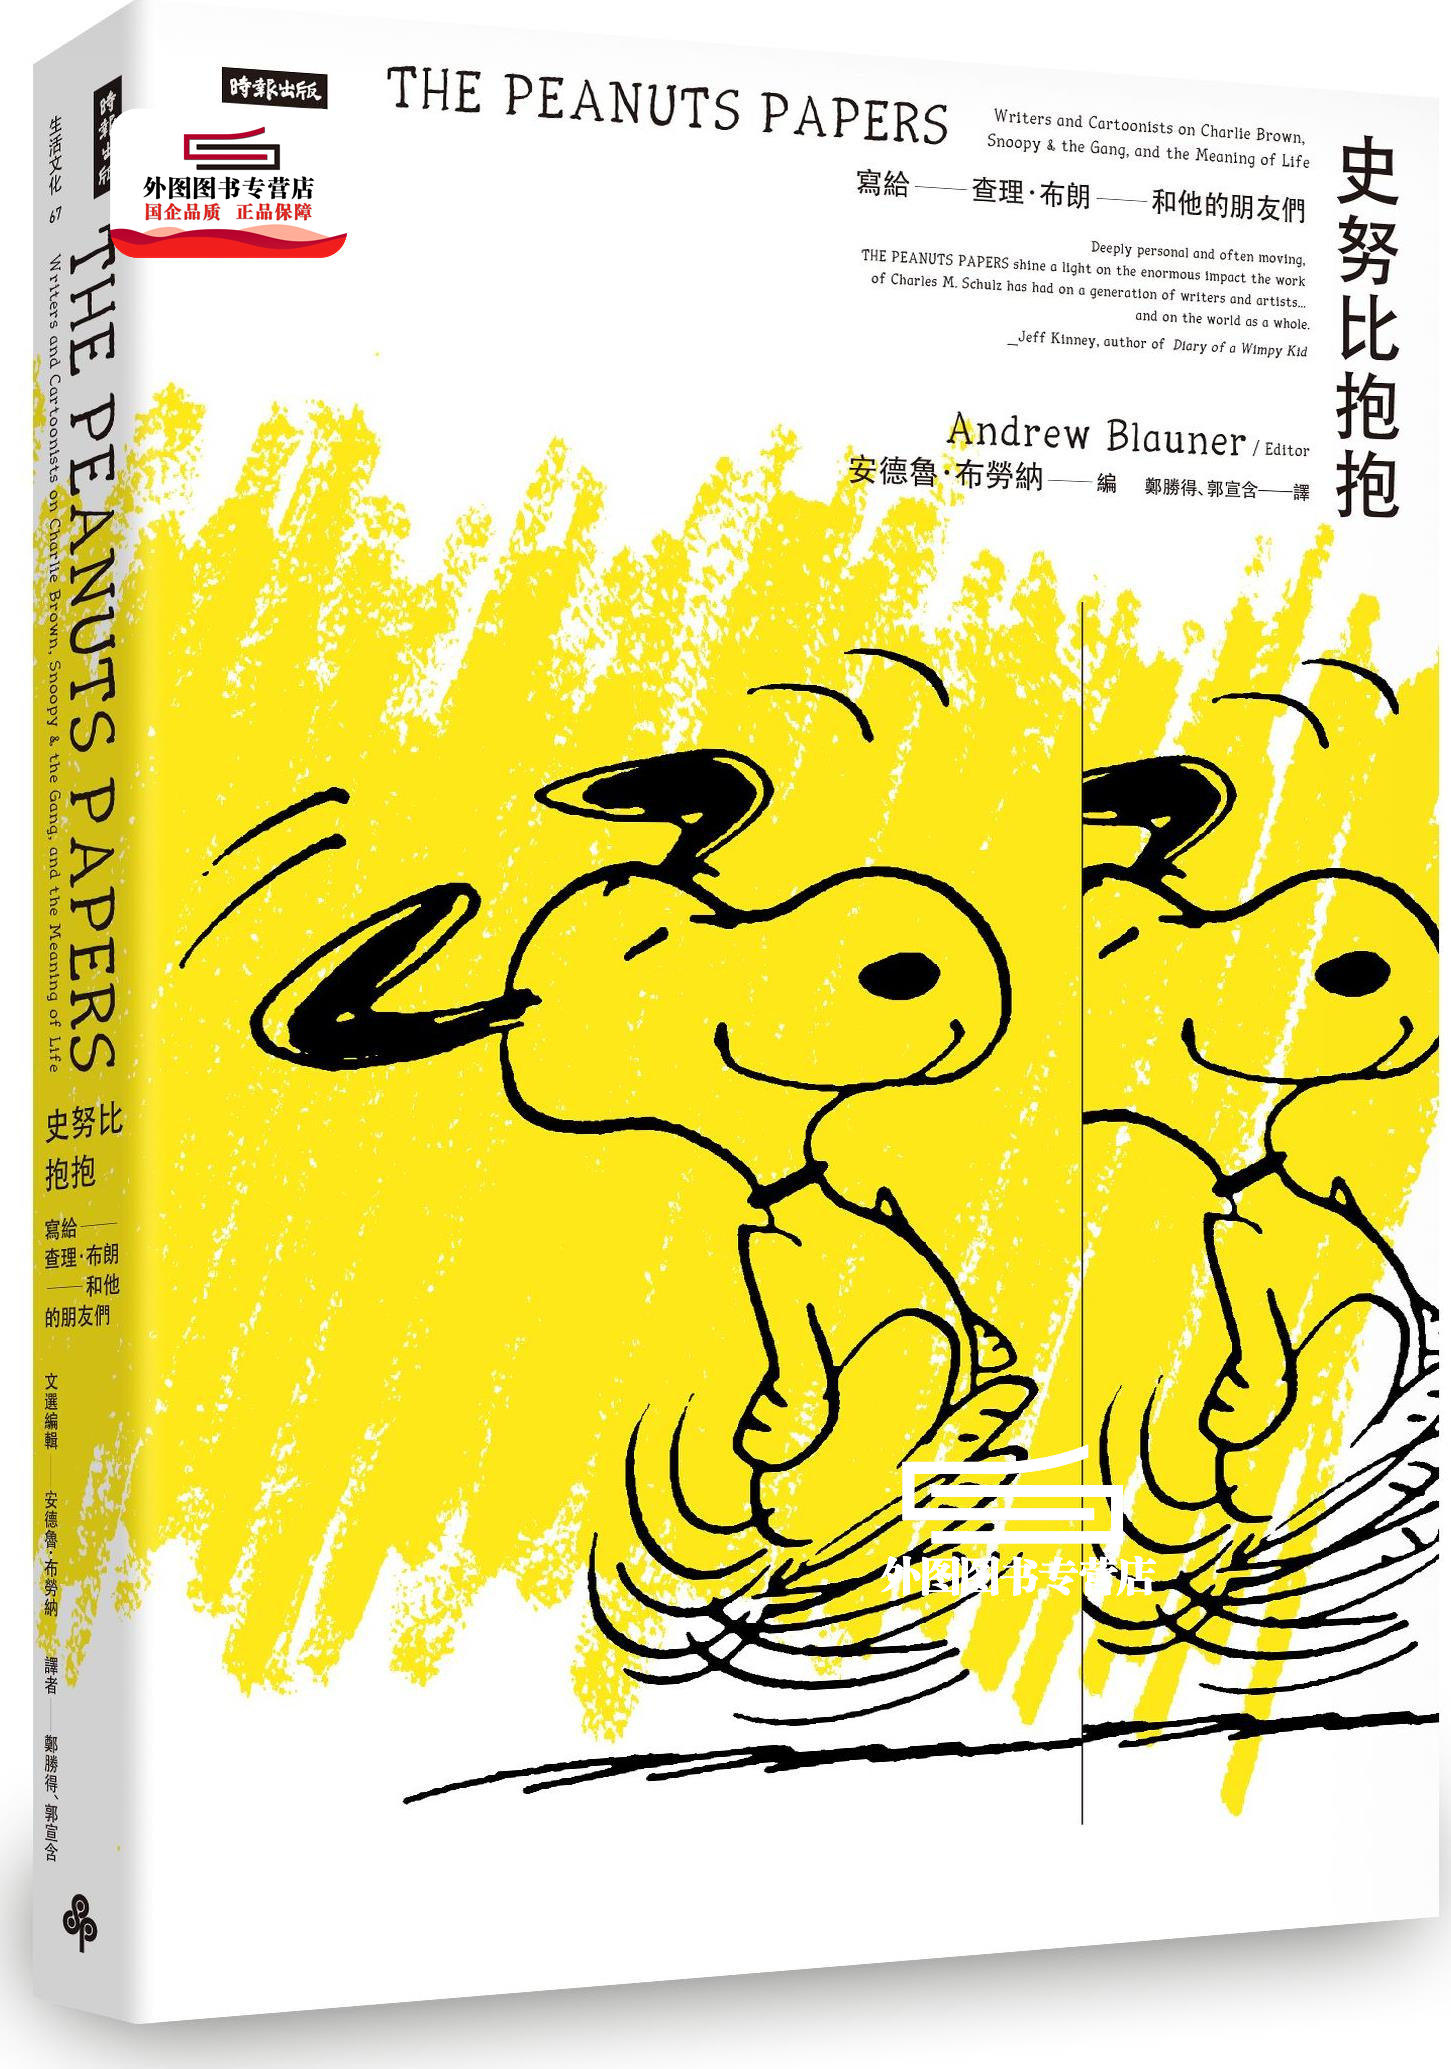 预售【外图台版】史努比抱抱:写给查理.布朗和他的朋友们 / 安德鲁‧布劳纳-编 时报文化